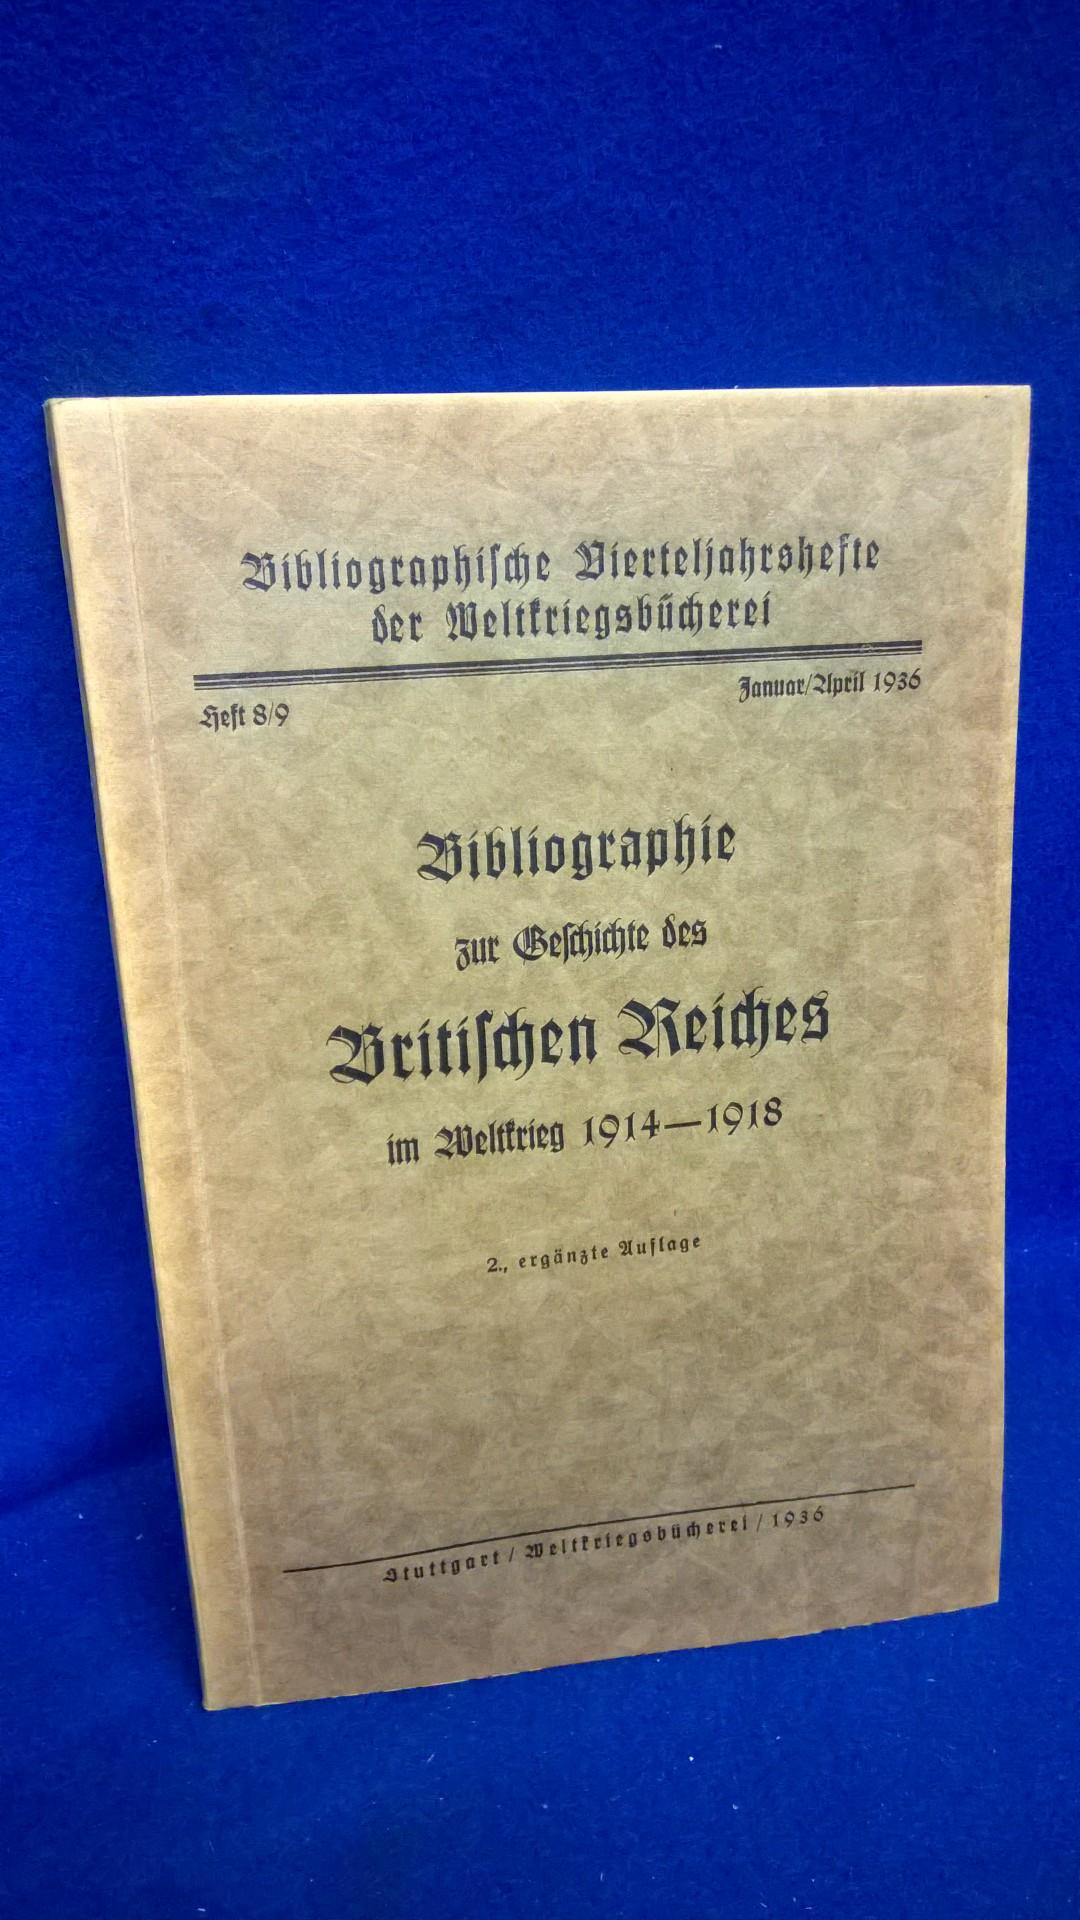 Bibliographie zur Geschichte des Britischen Reiches im Weltkrieg 1914-1918.